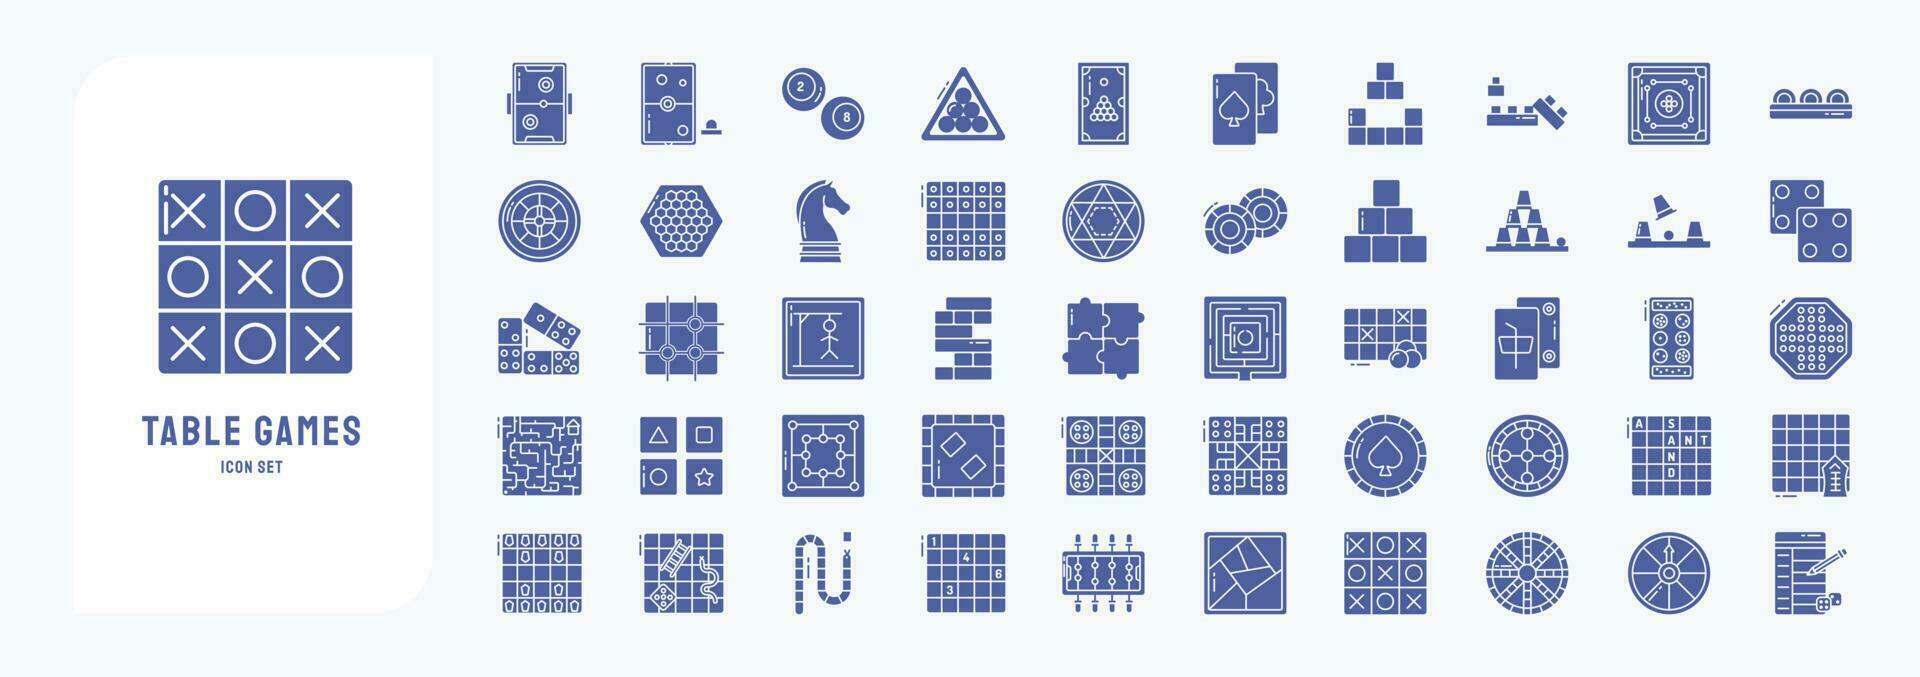 verzameling van pictogrammen verwant naar tafel spellen, inclusief pictogrammen Leuk vinden lucht hoer, schaken, casino chips, en meer vector